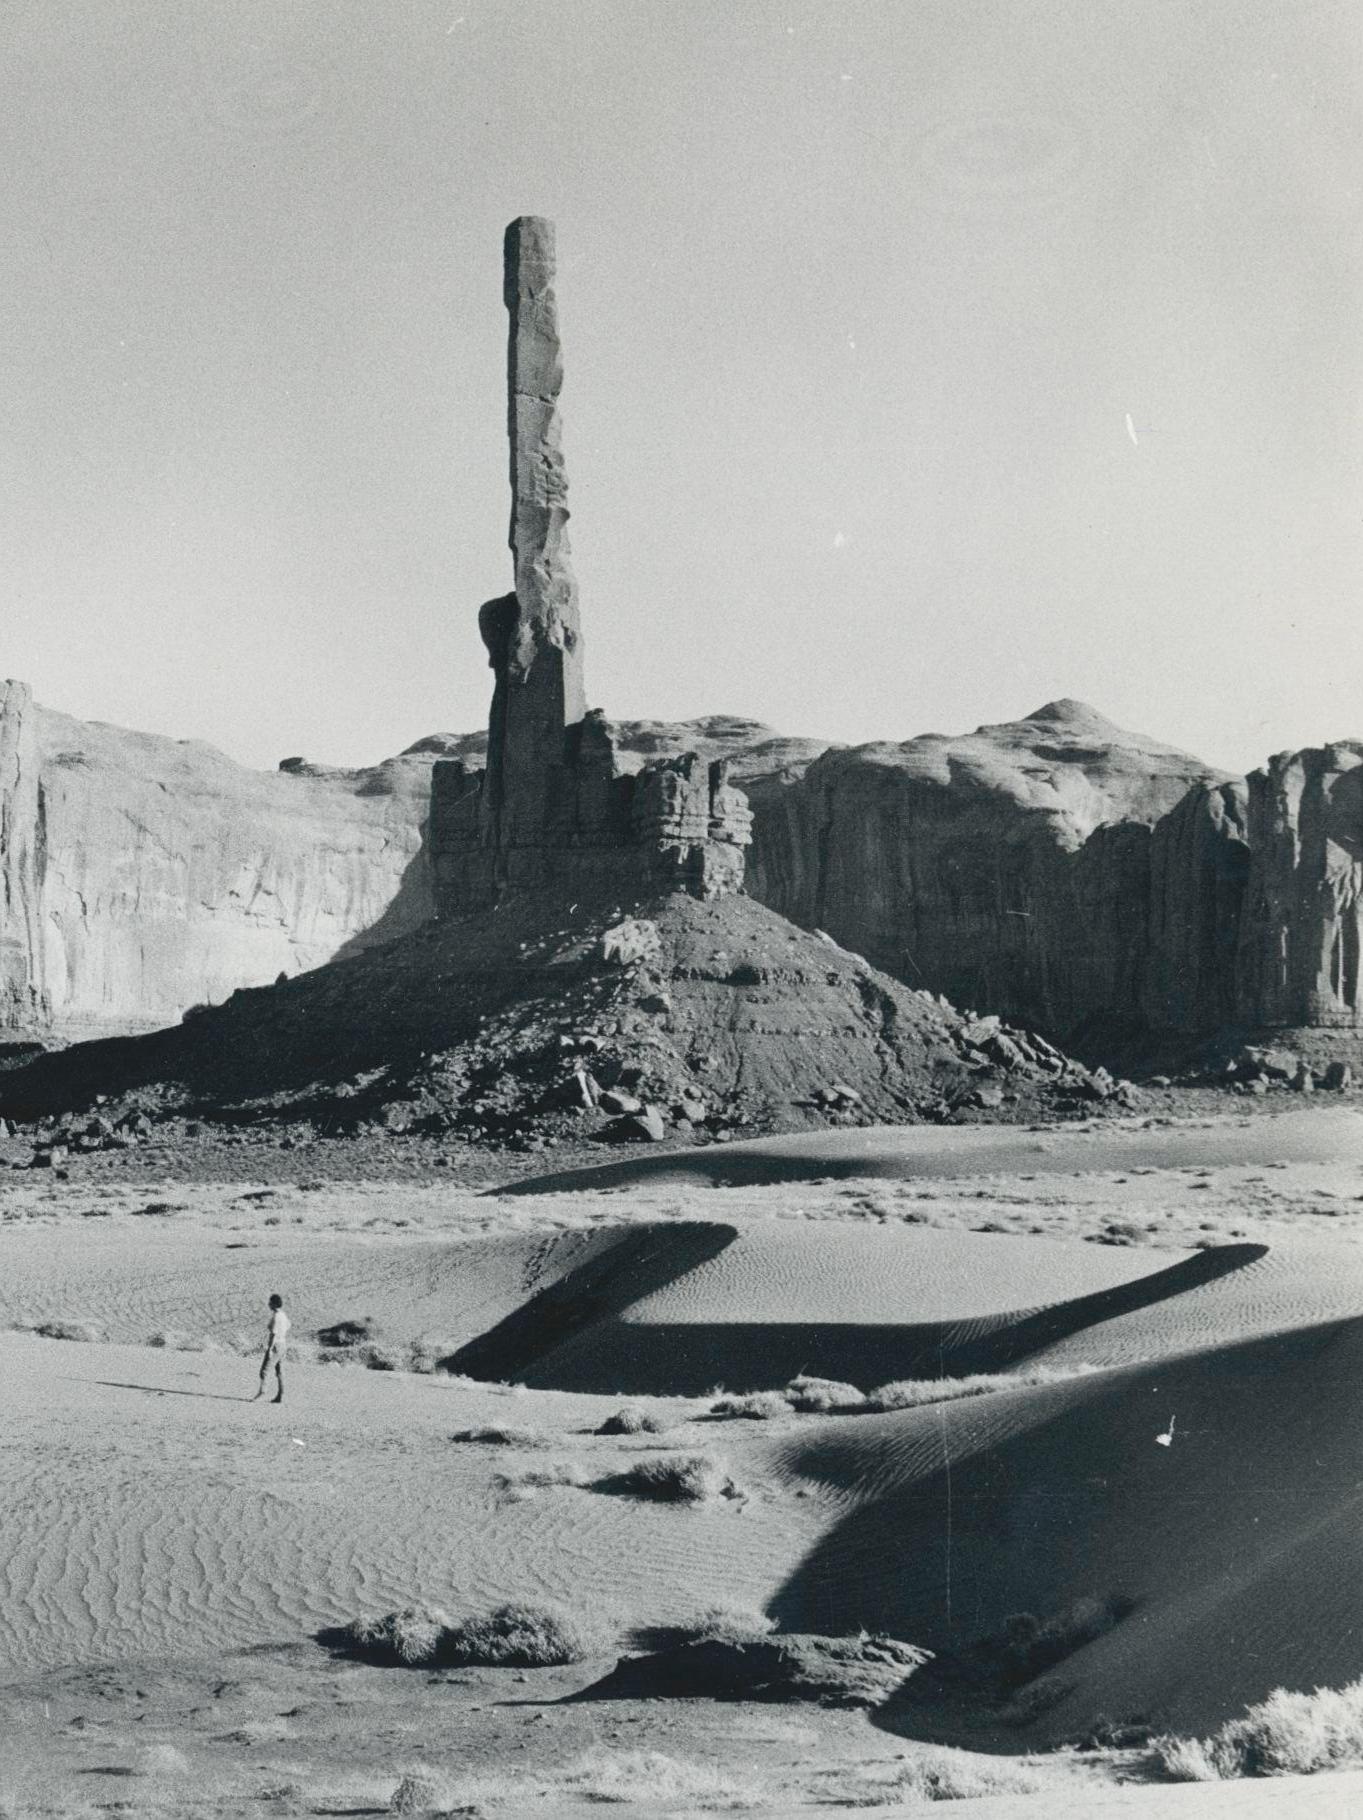 Monument Valley, Utah/Arizona, noir et blanc, USA 1960, 16,7 x 23, 4 cm - Moderne Photograph par Erich Andres